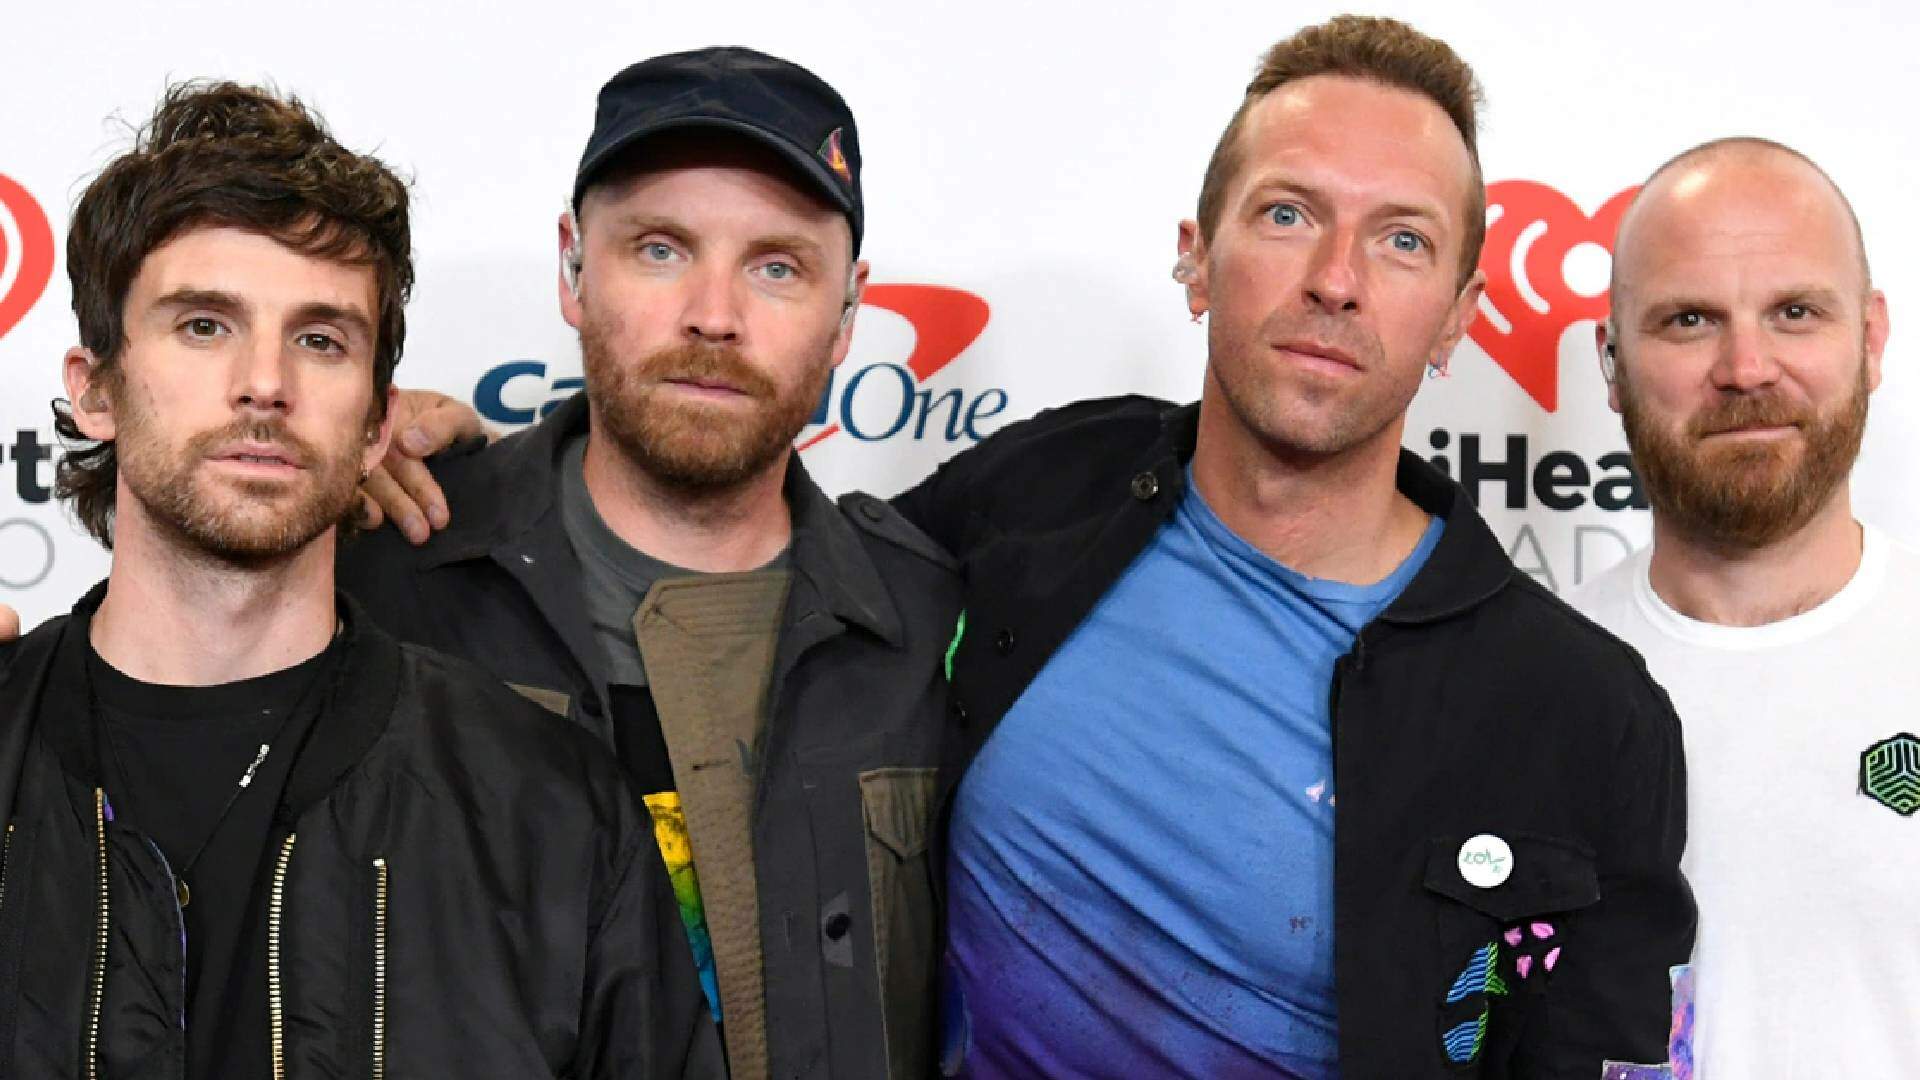 Polêmica com Coldplay! Ex-empresário processa banda, motivo vem à tona e choca web  - Metropolitana FM